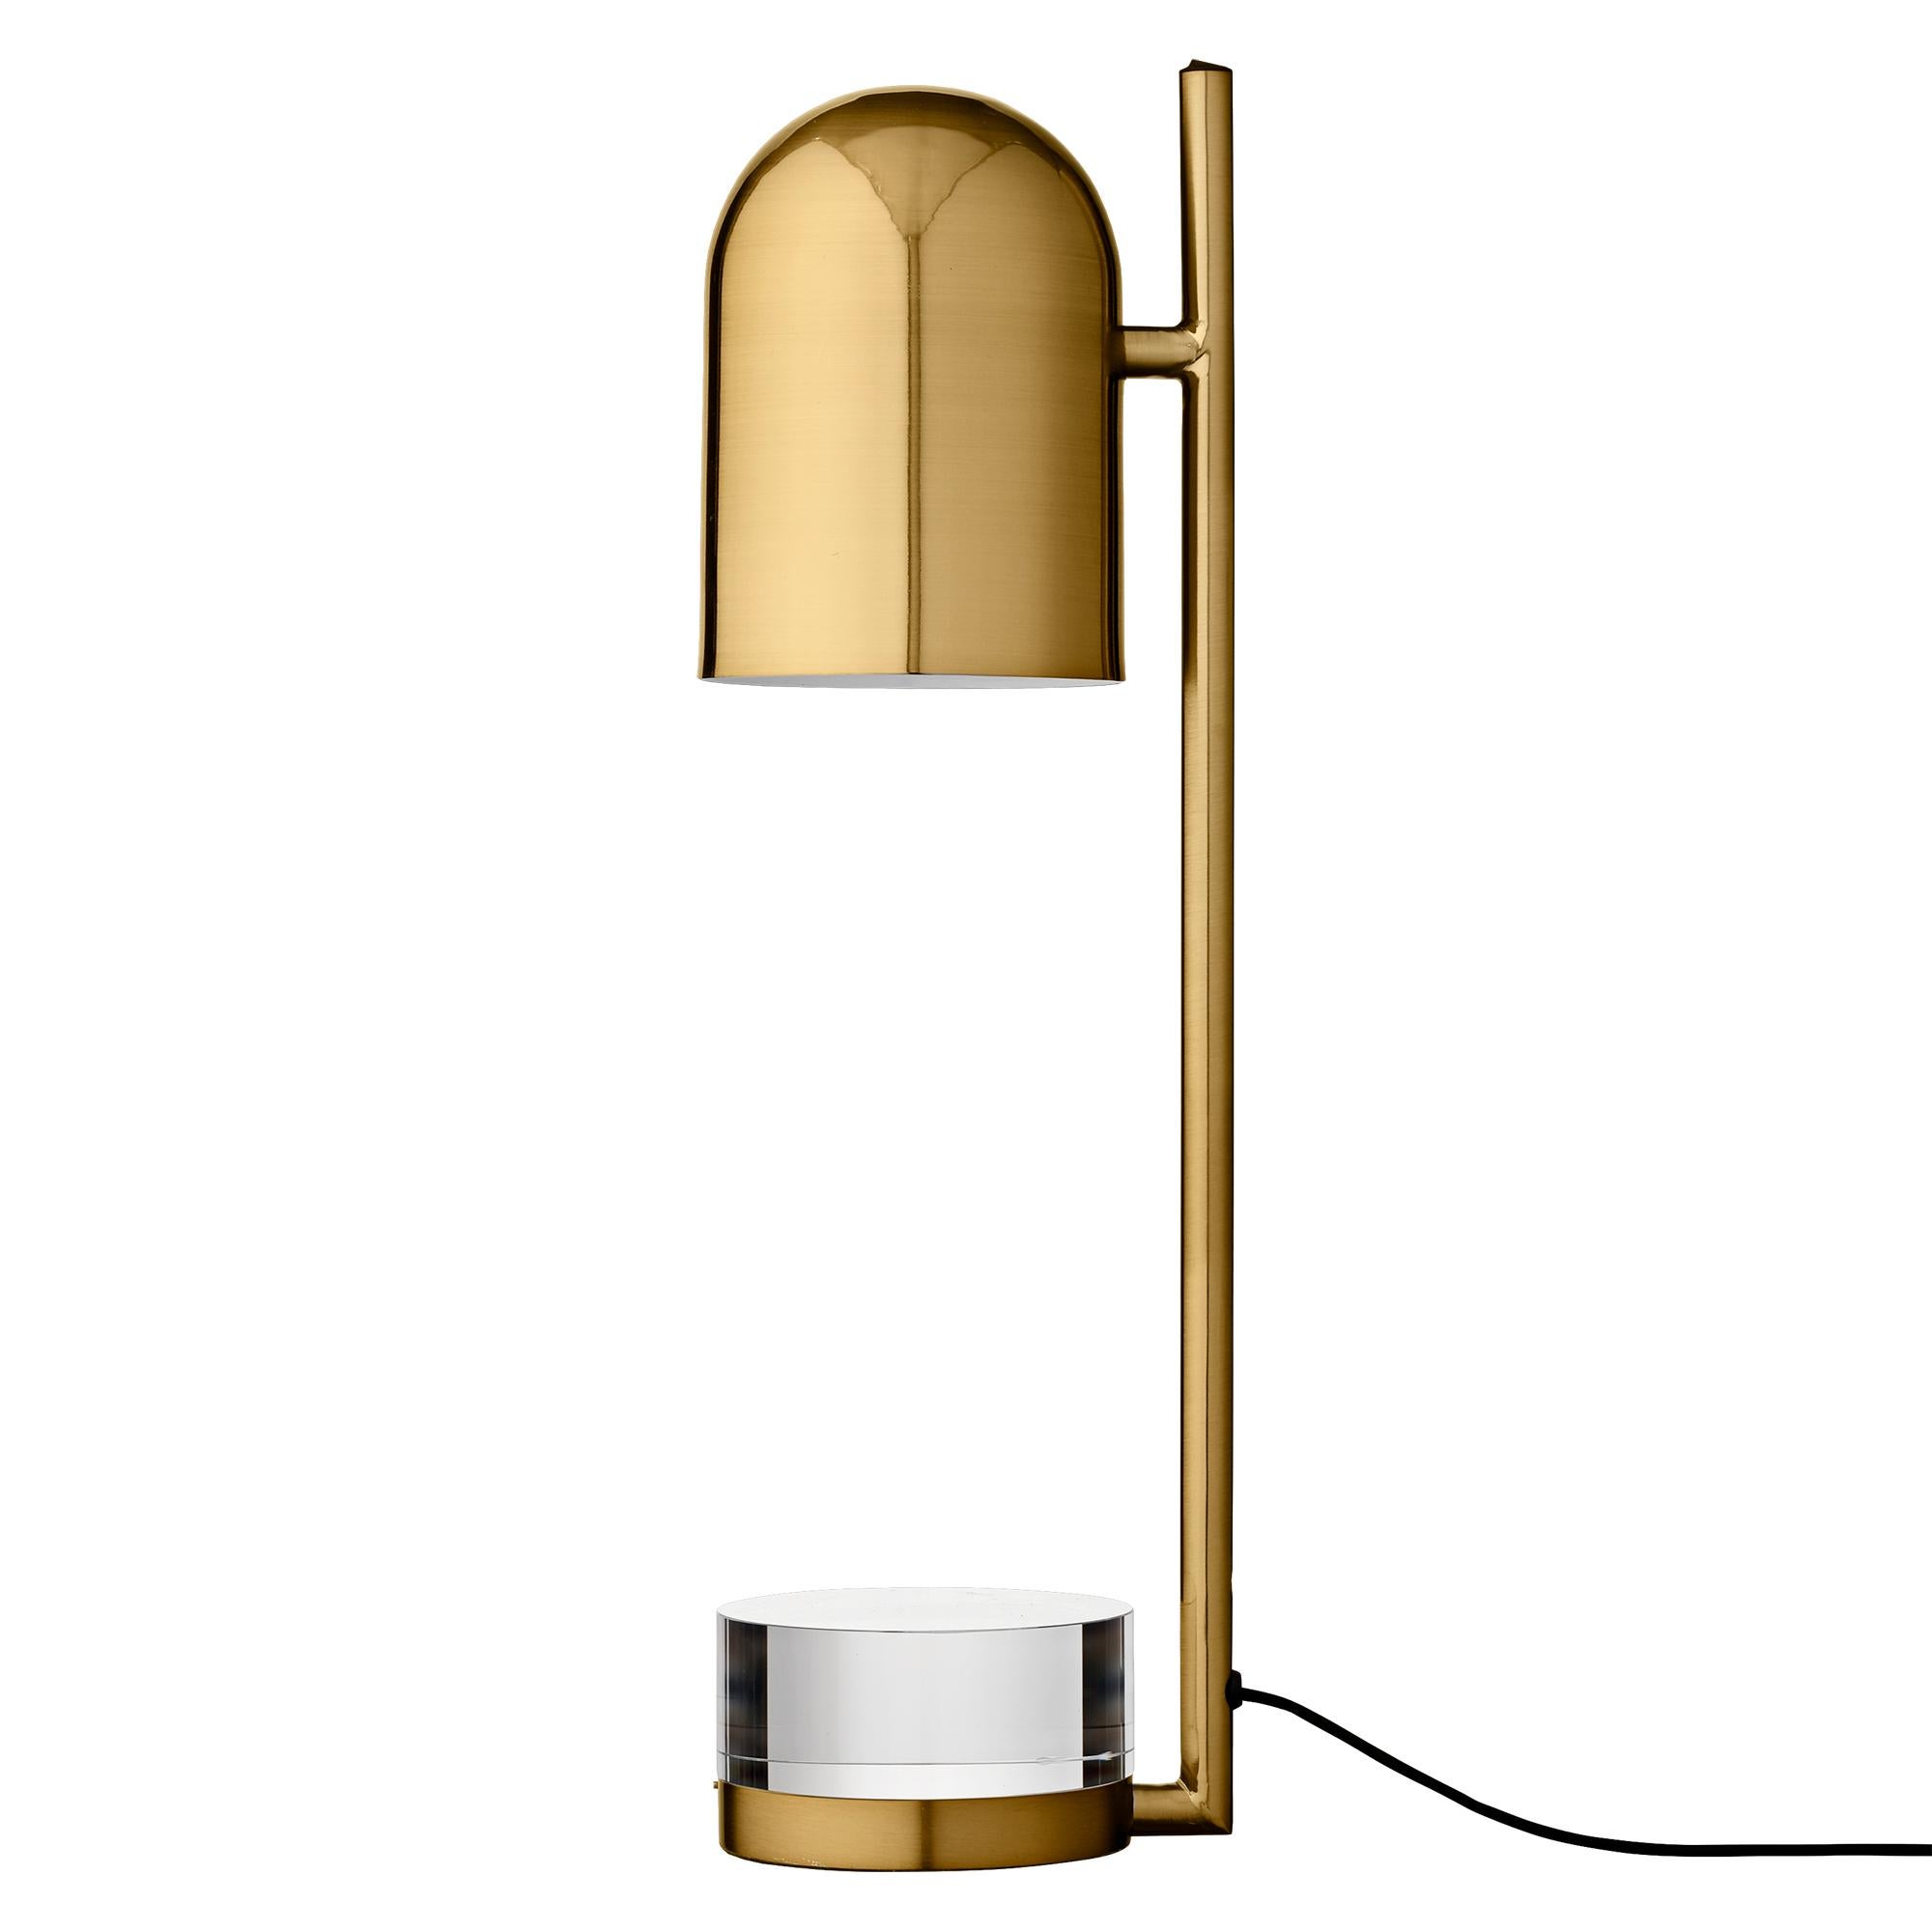 Lampe de table à cylindre doré
Dimensions : Diamètre 12 x H 50 cm 
MATERIAL : Verre, fer avec placage en laiton et revêtement en poudre.
Détails : Pour toutes les lampes, la source lumineuse recommandée est E27 max 25W&220/240 voltage. Nous